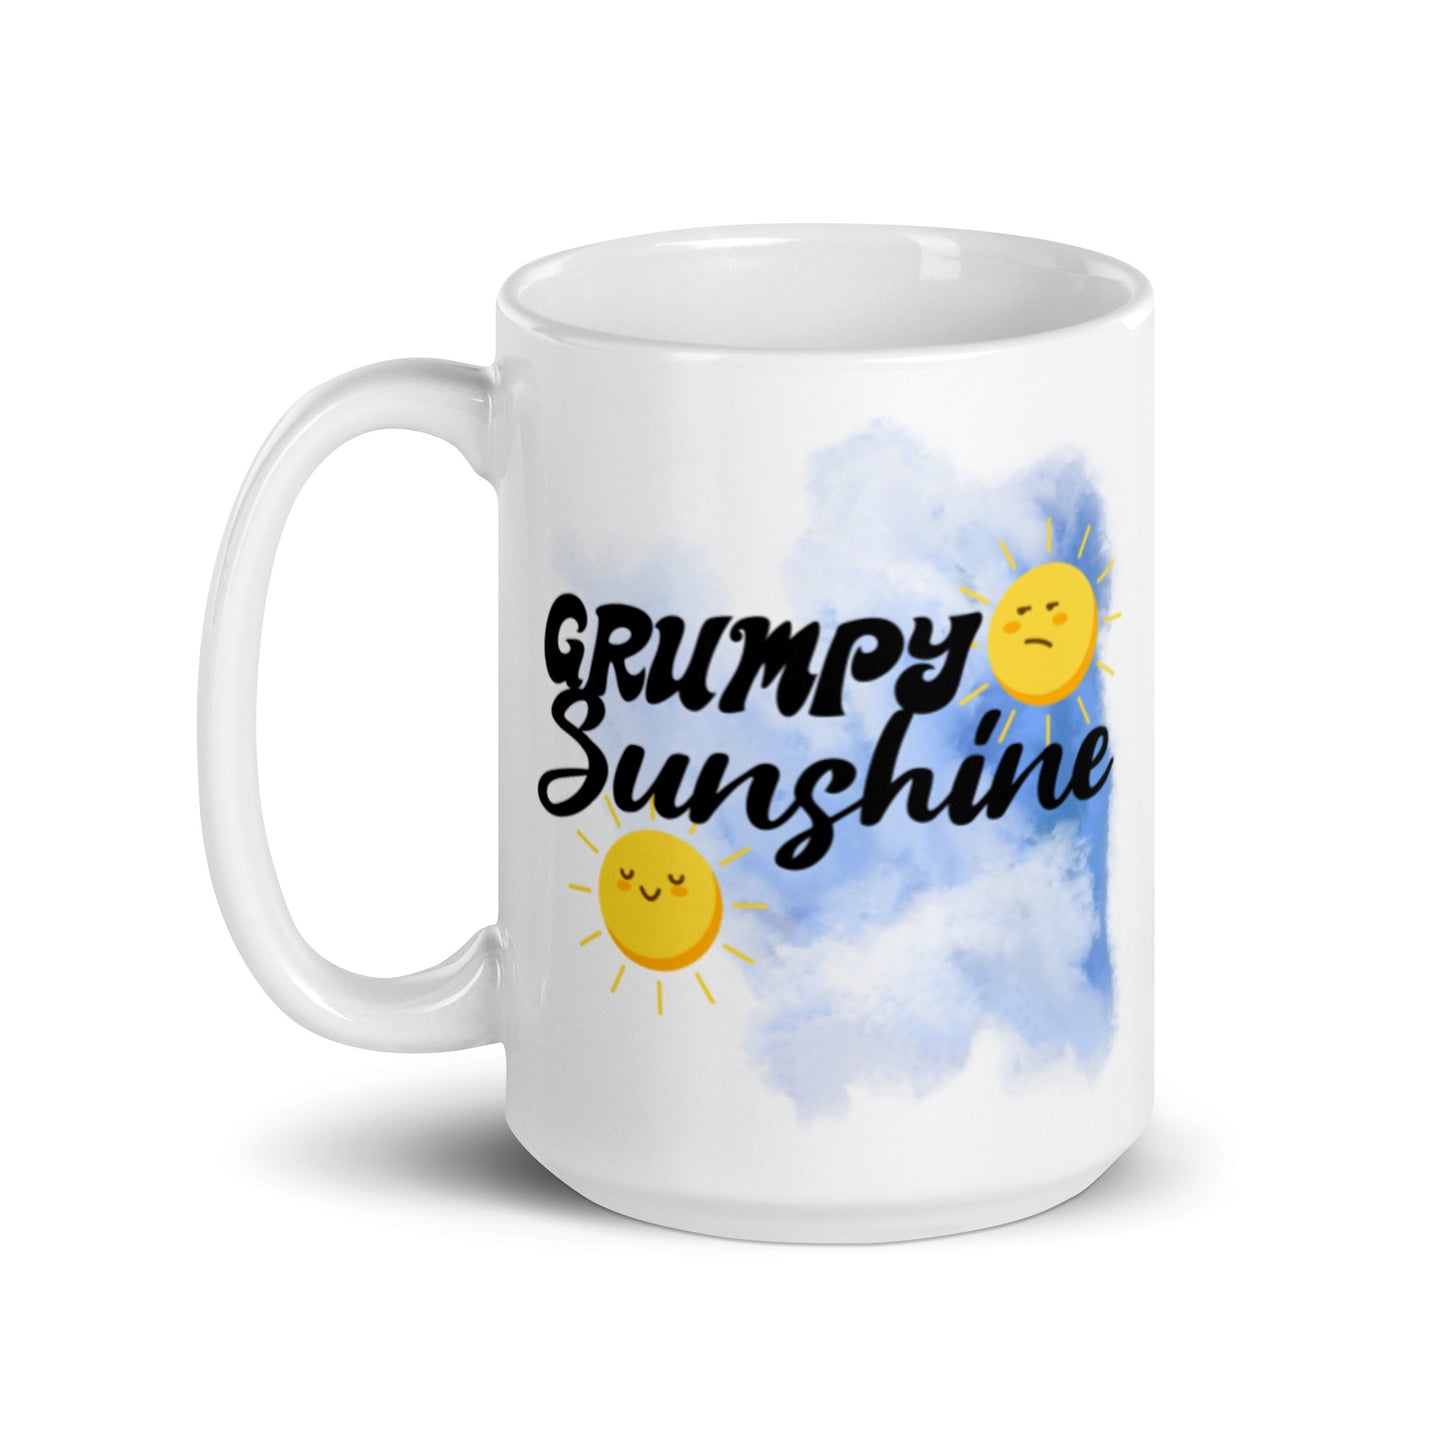 Grumpy Sunshine Mug